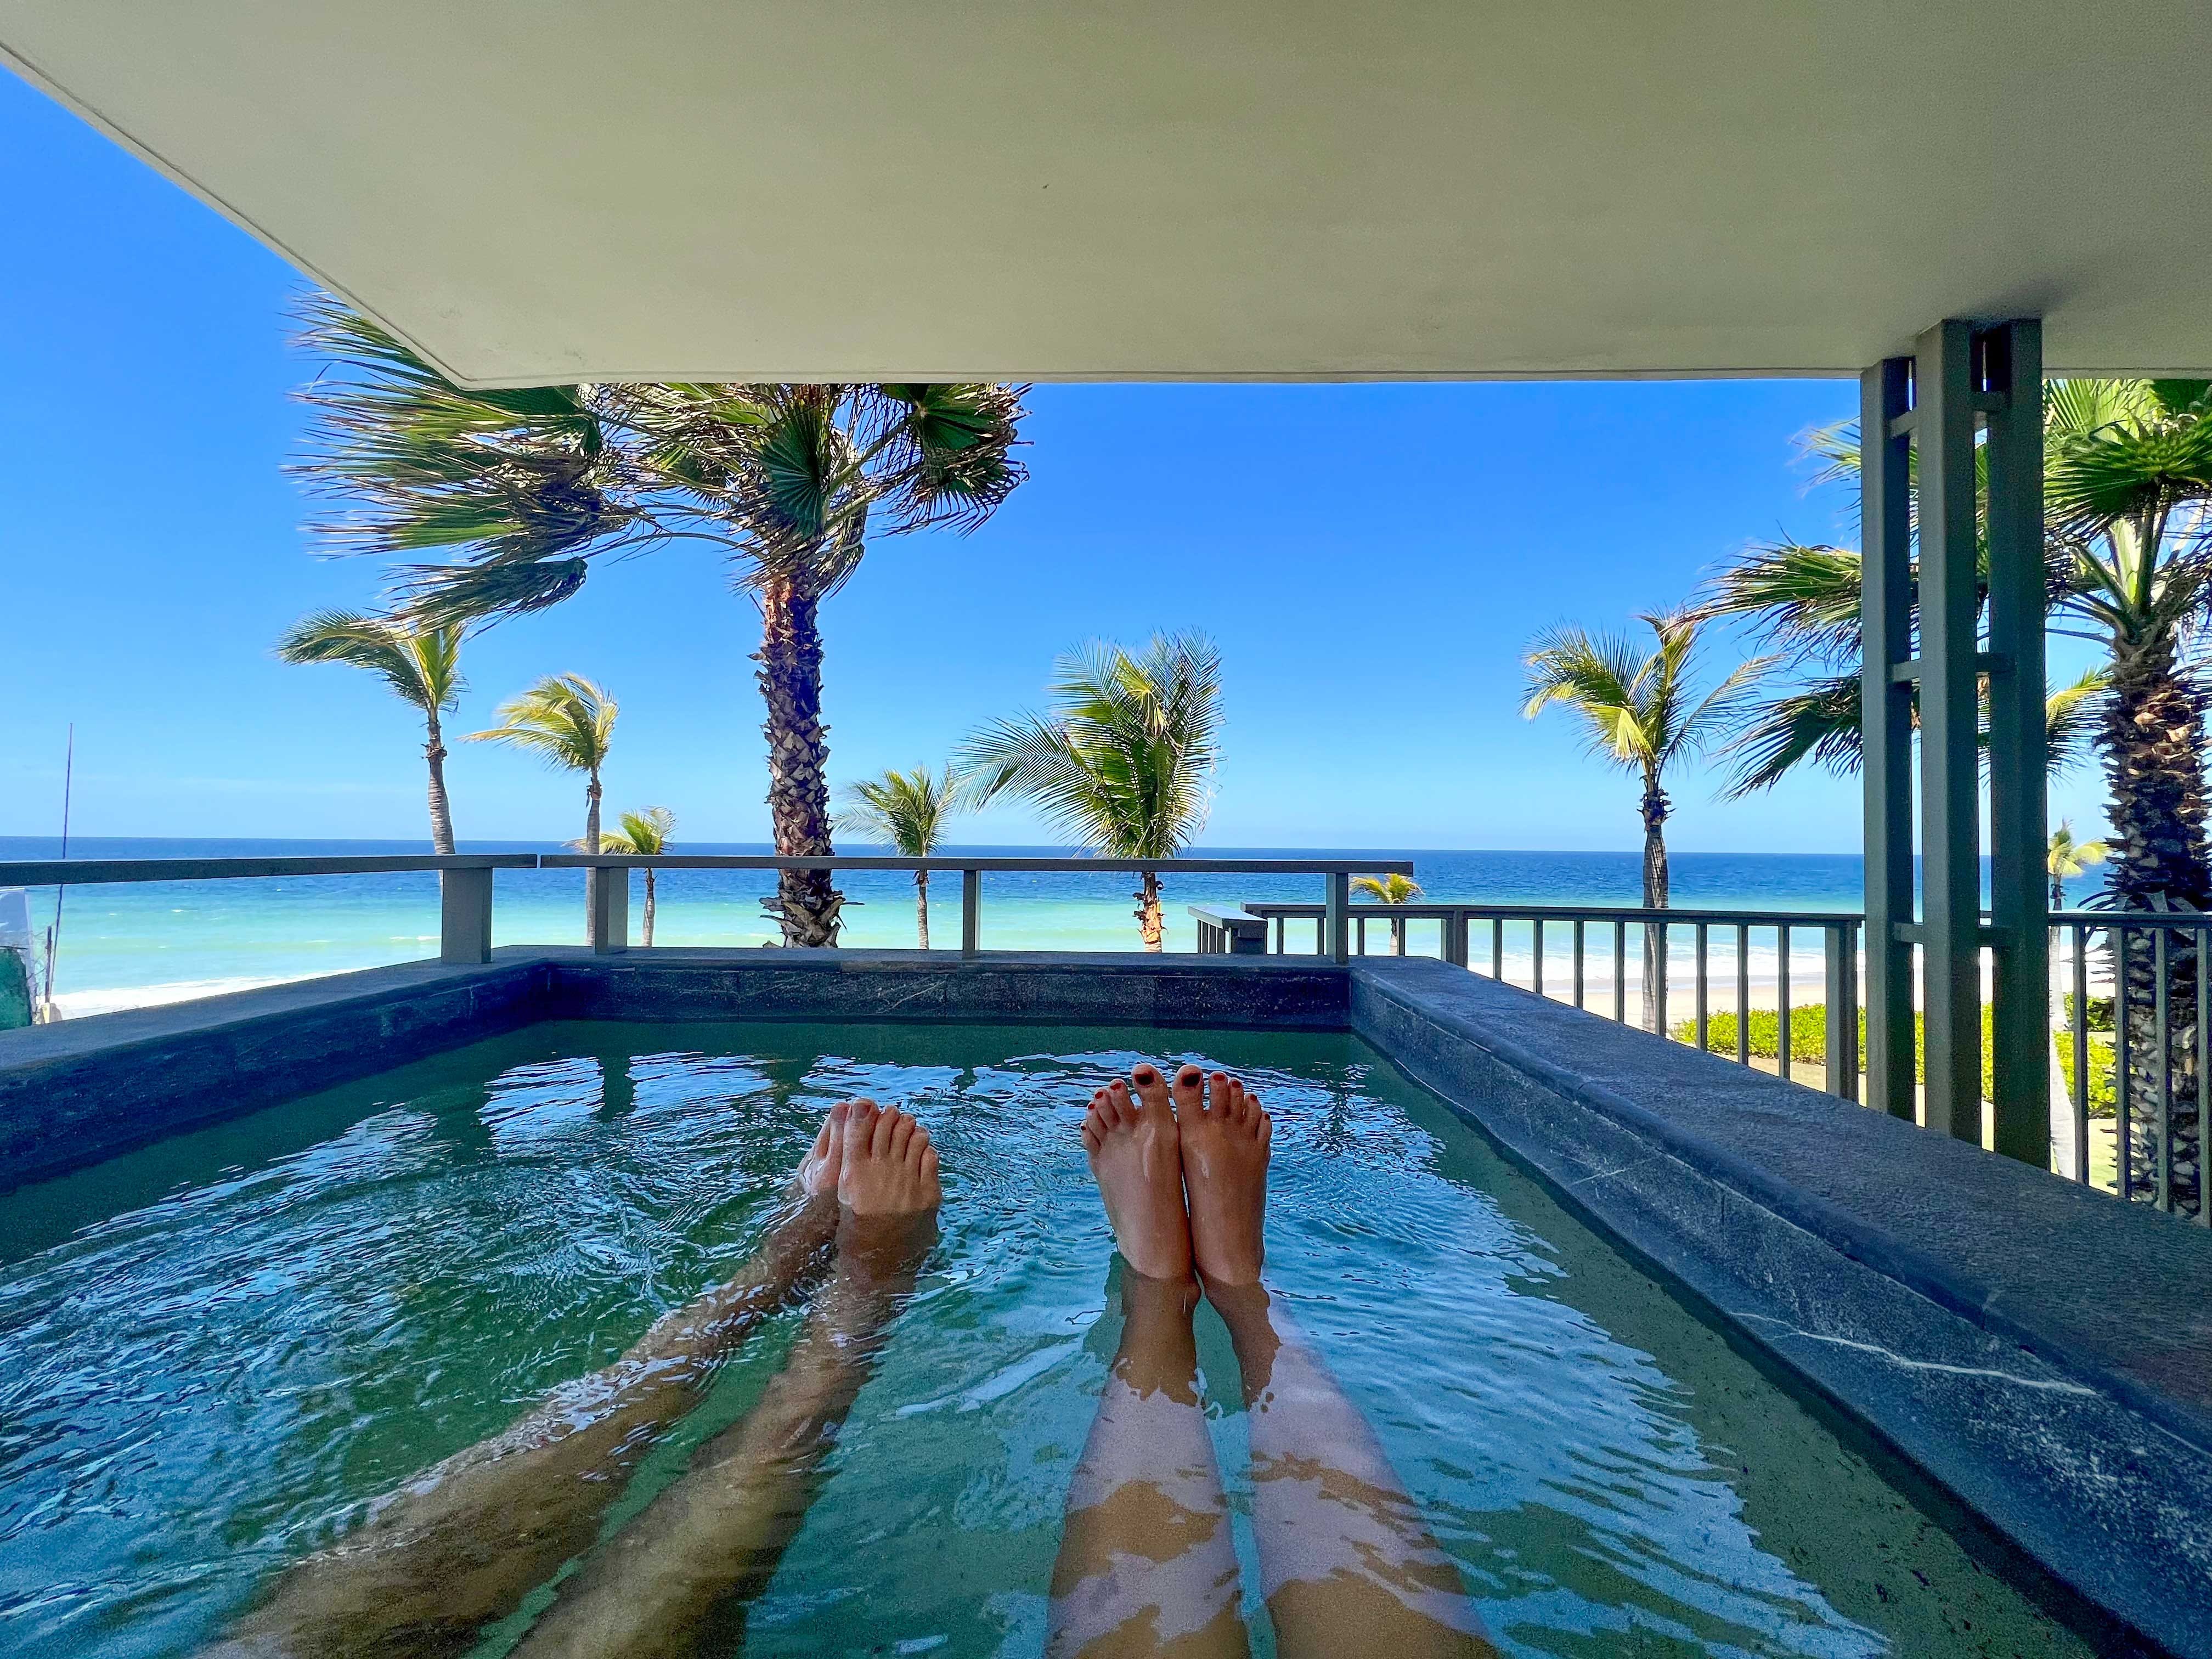 Zwei Paar Beine und Füße ragen aus einem Tauchbecken auf einem Balkon mit Blick auf einen tropischen Strand.